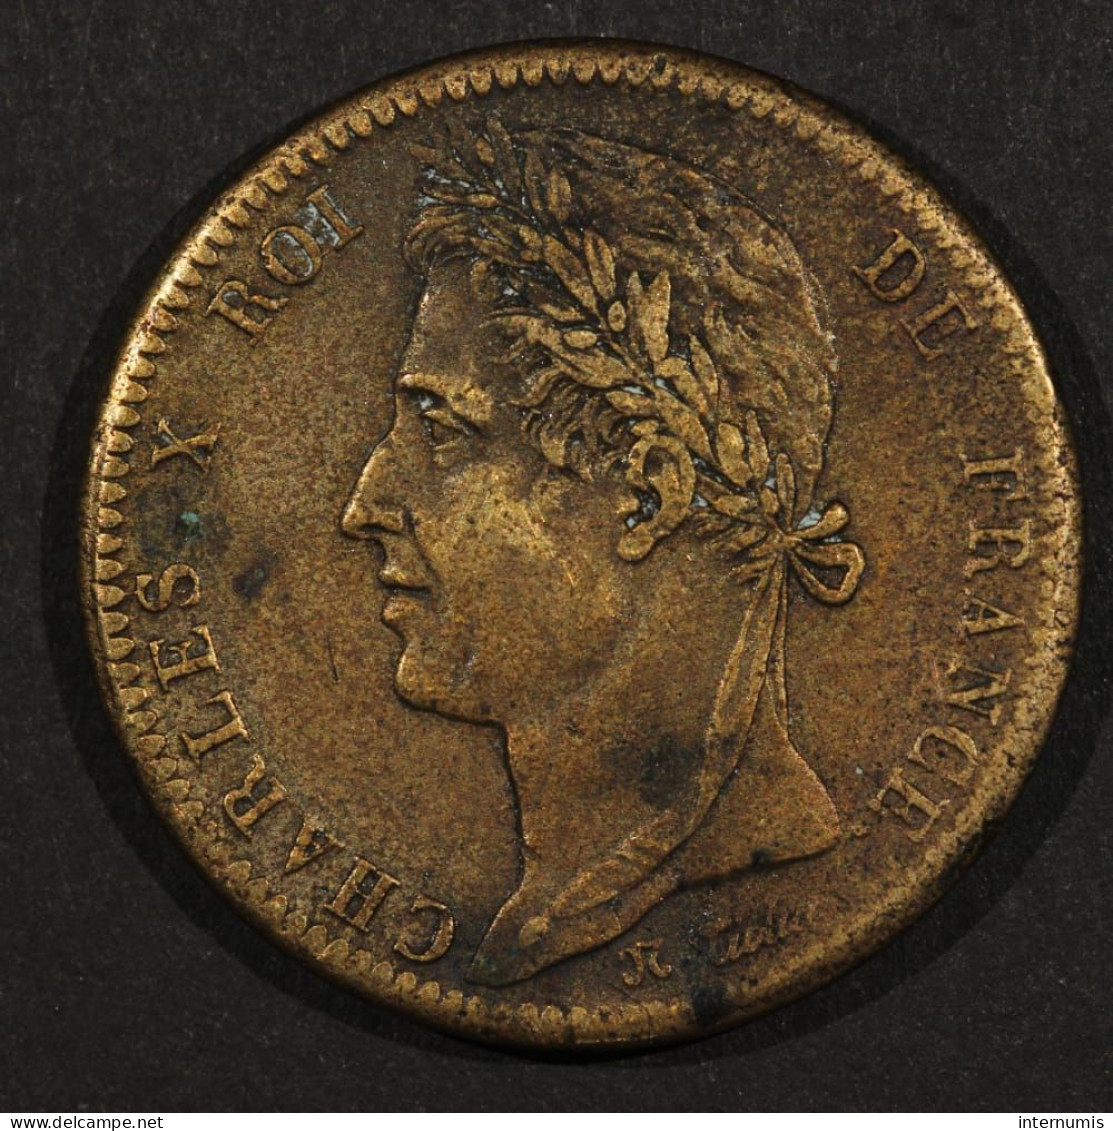 France, Charles X, 10 Centimes - Colonies Françaises, 1828, A - Paris, Bronze, TTB (EF), KM#11.1 & Lec.306 - French Colonies (1817-1844)